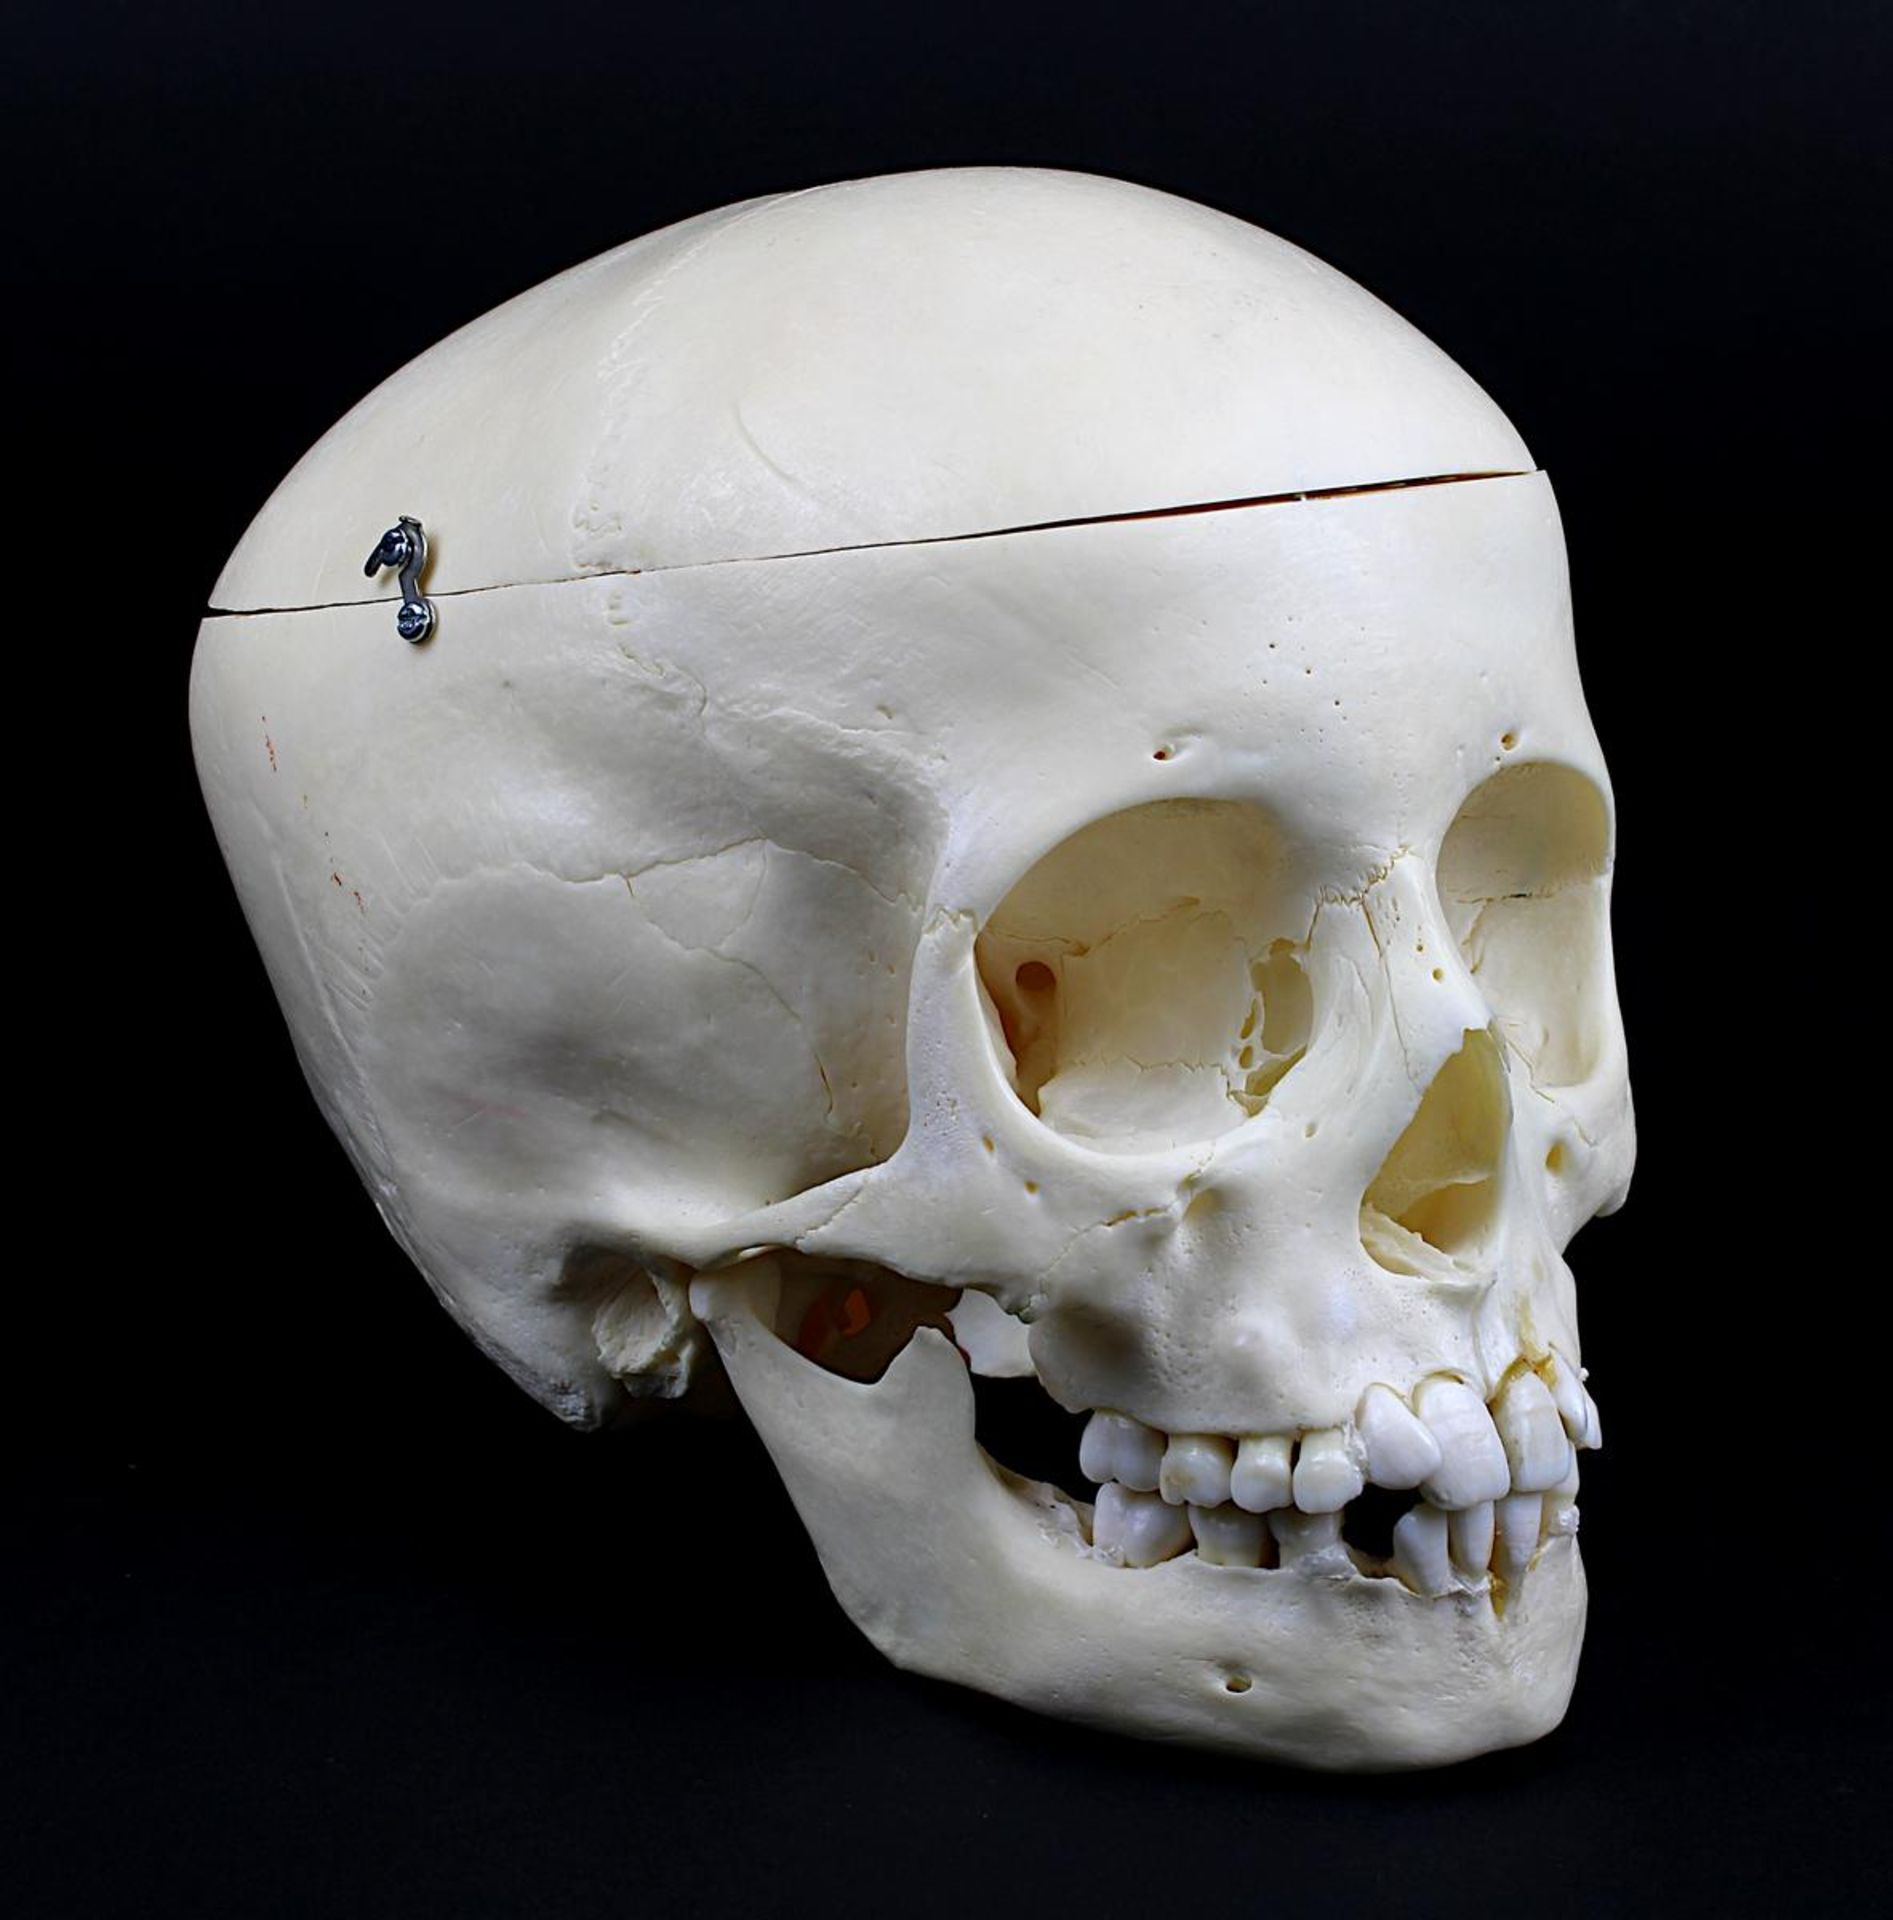 Anatomisches Modell eines menschlichen Schädels, 2. H. 20. Jh., mit Zähnen und beweglichem